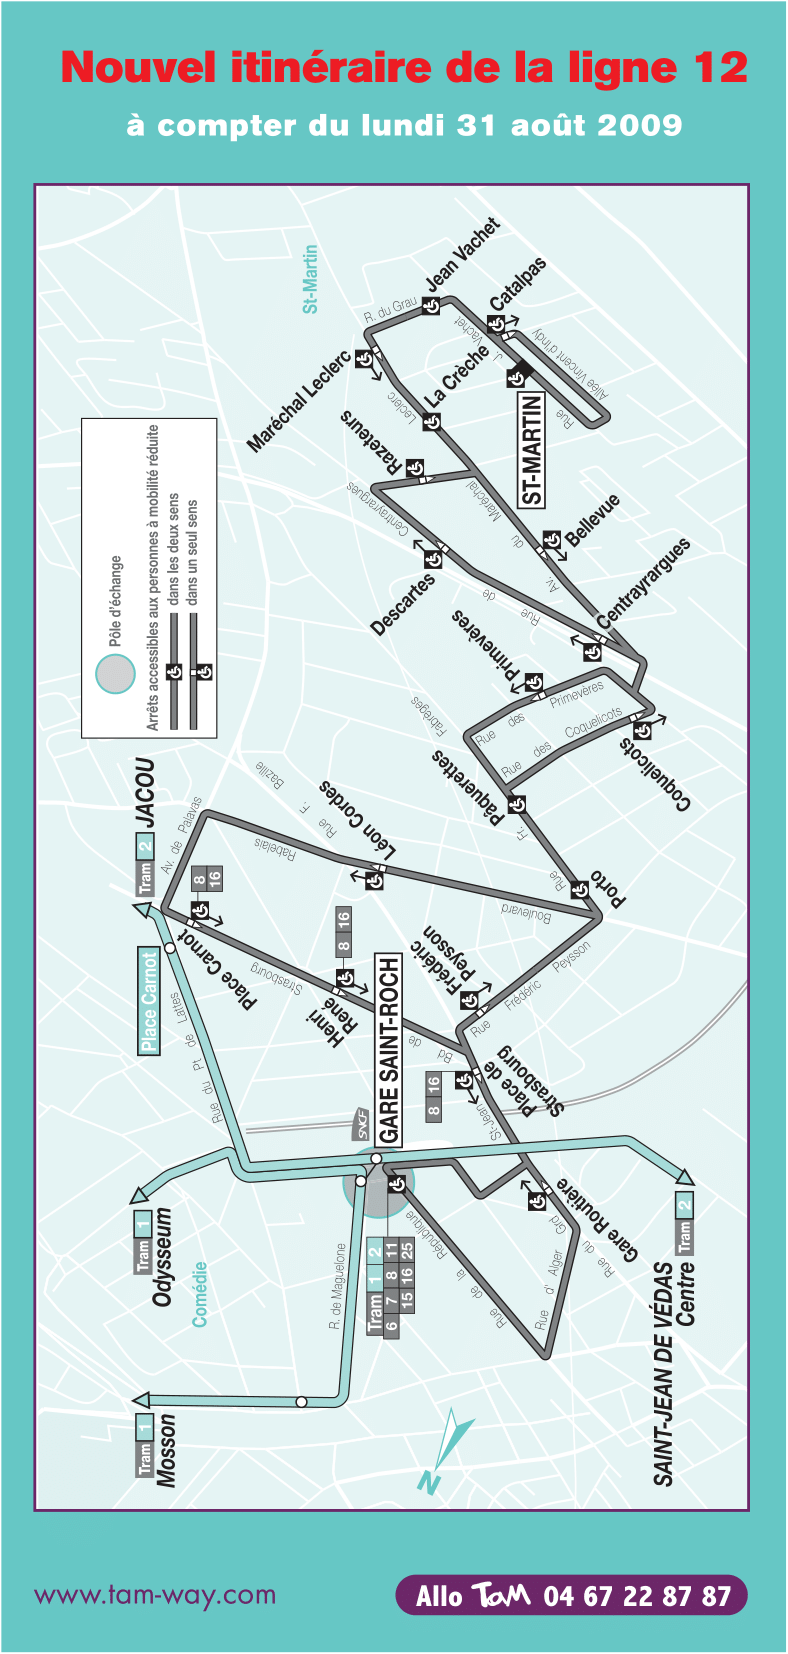 Plan ligne la ligne 12 à partir de septembre 2009. Source : document TaM